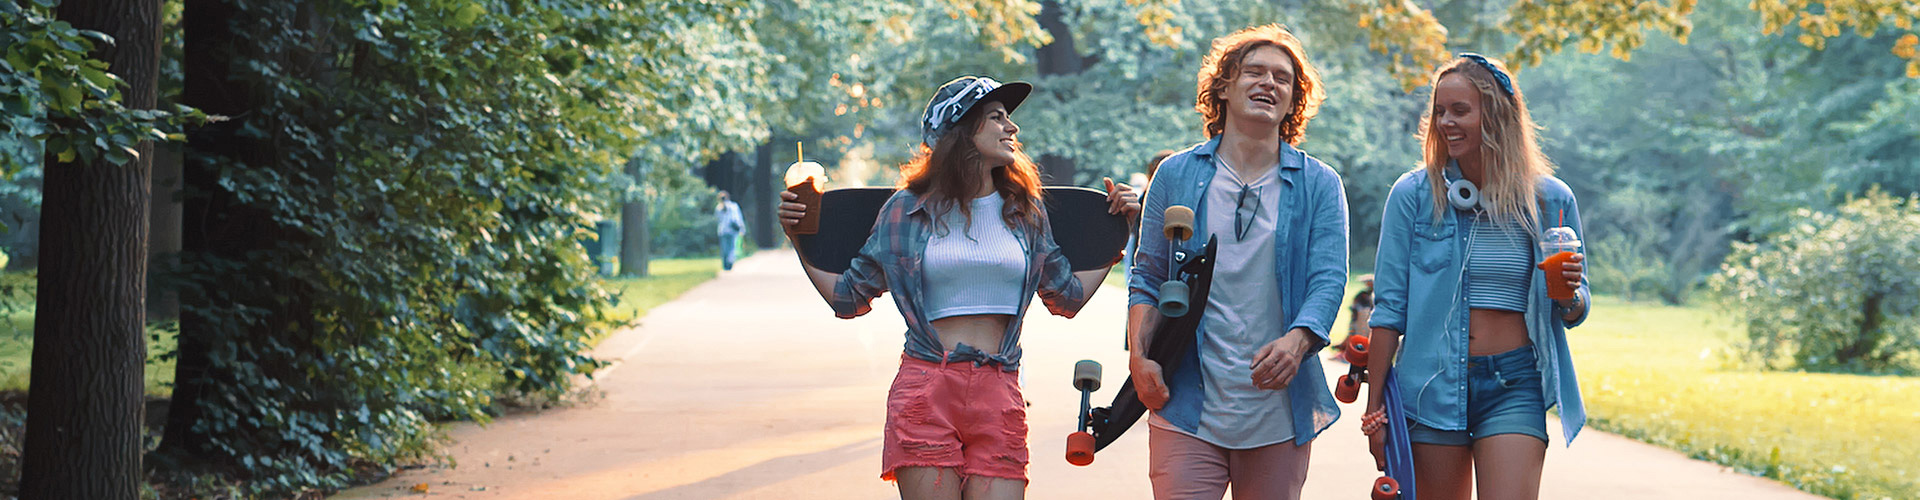 Programa Joven In - Grupo de jovenes vestidos con ropa moderna con patinetes, sonriendo junto a un parque rodeado de arboles